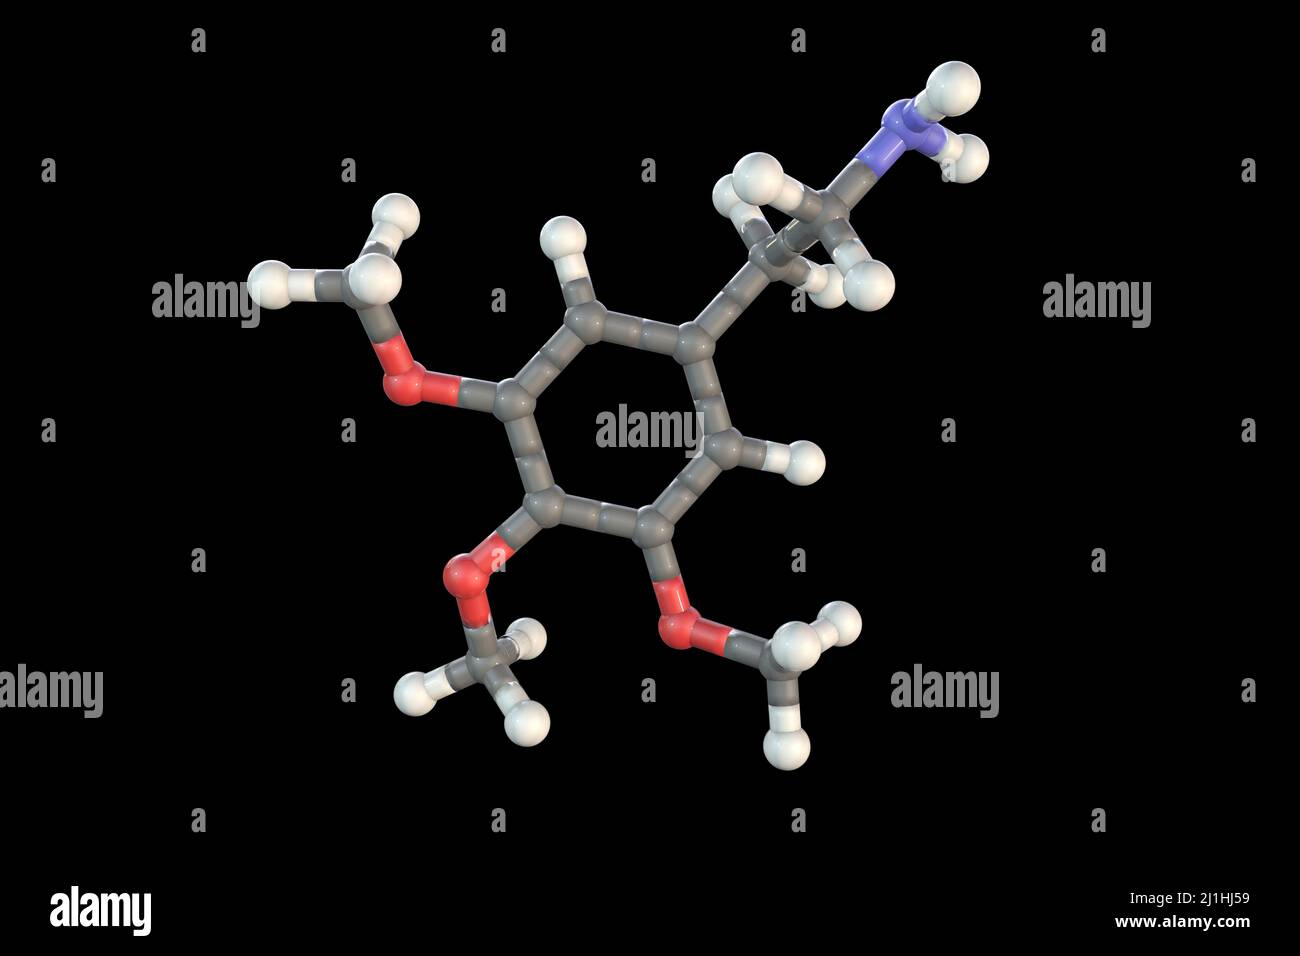 Meskalin-Wirkstoffmolekül, Abbildung Stockfoto